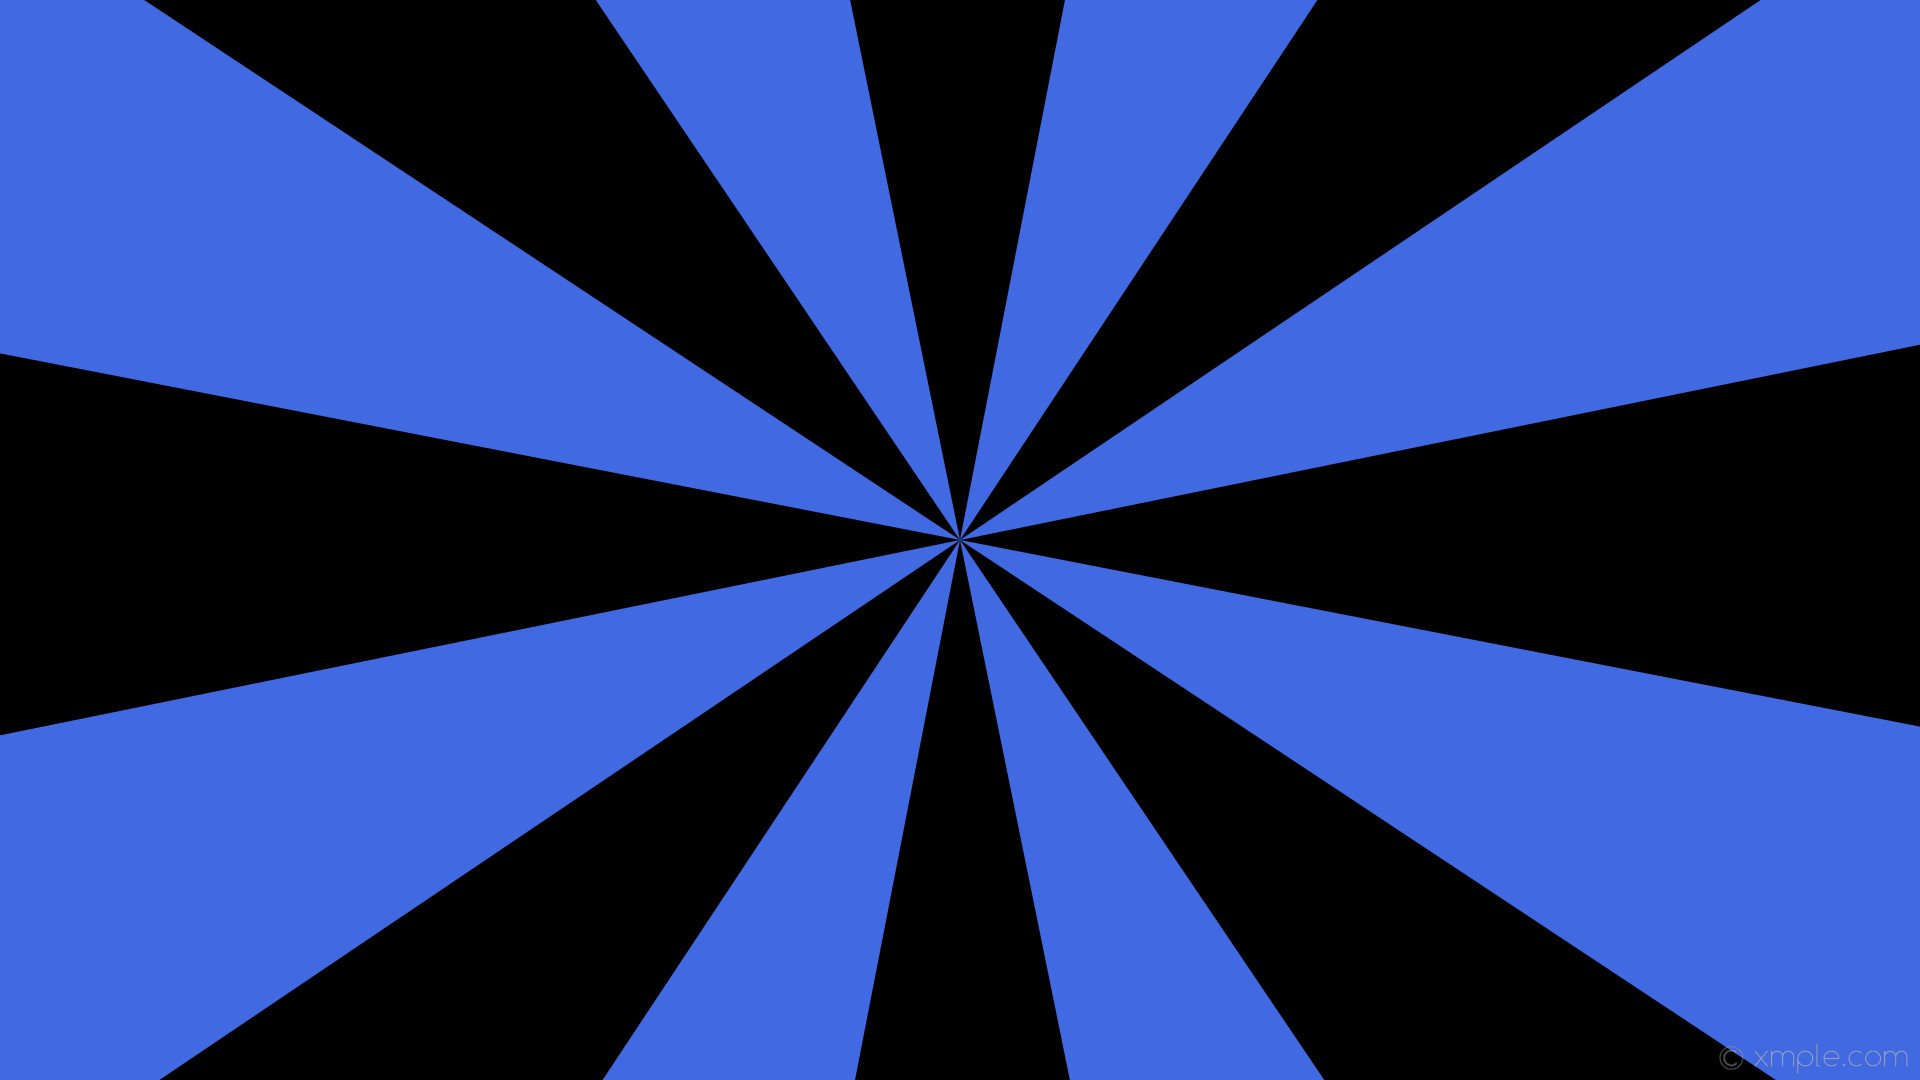 1920x1080 wallpaper burst black blue sunburst rays royal blue #000000 #4169e1 11Â° 8 0